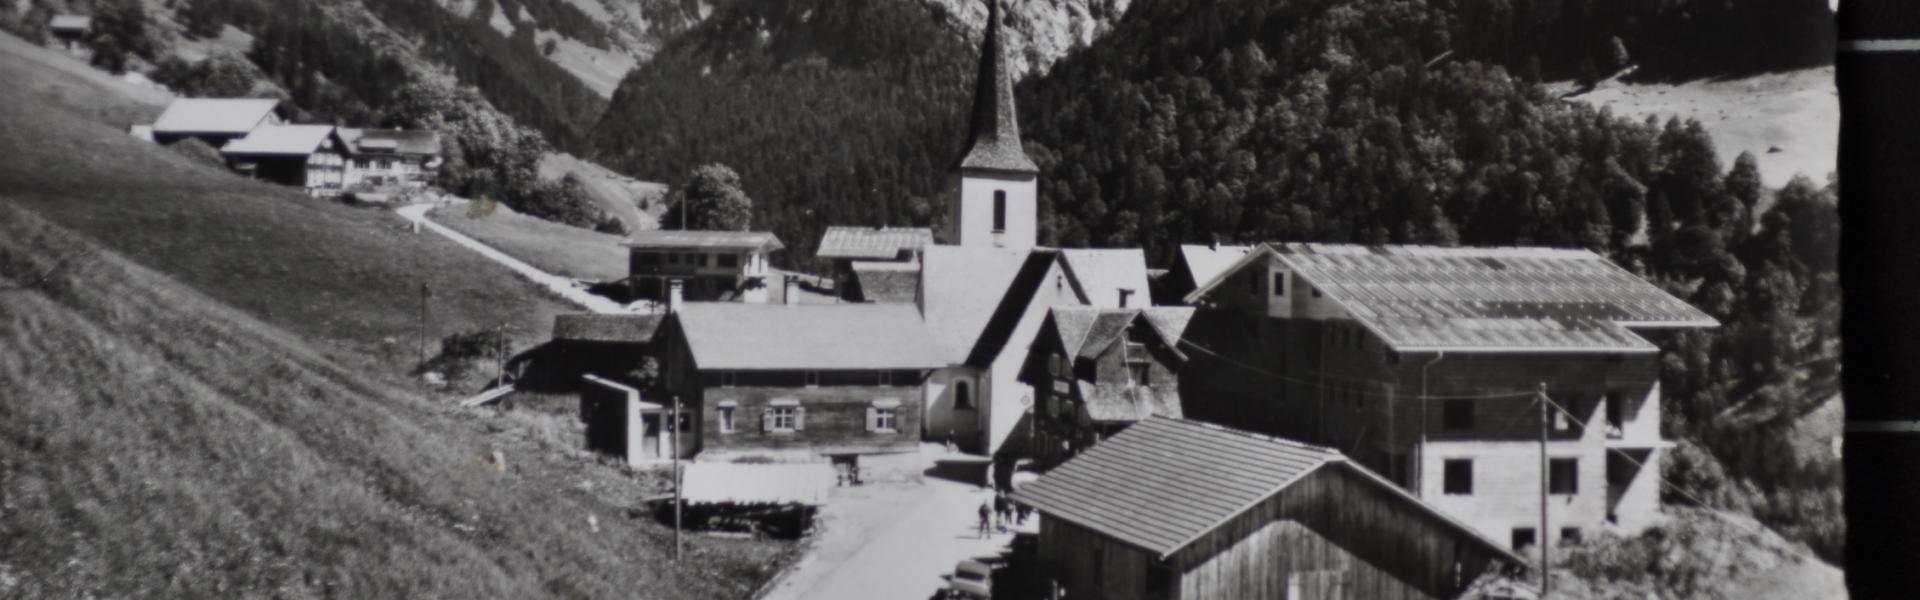 Eine historische Dorfansicht von Buchboden im Großen Walsertal